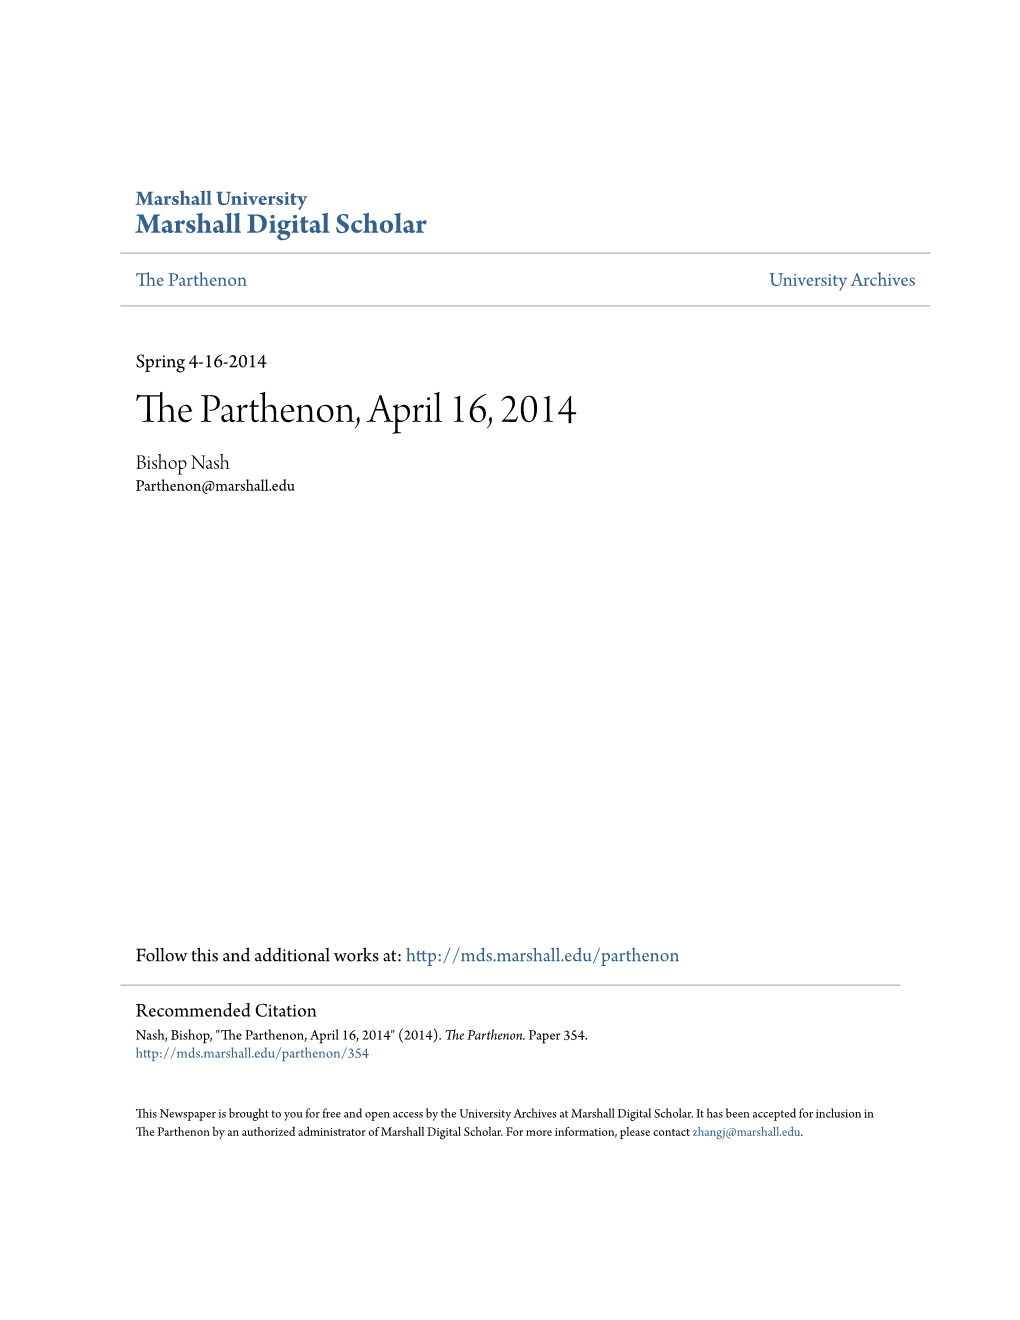 The Parthenon, April 16, 2014